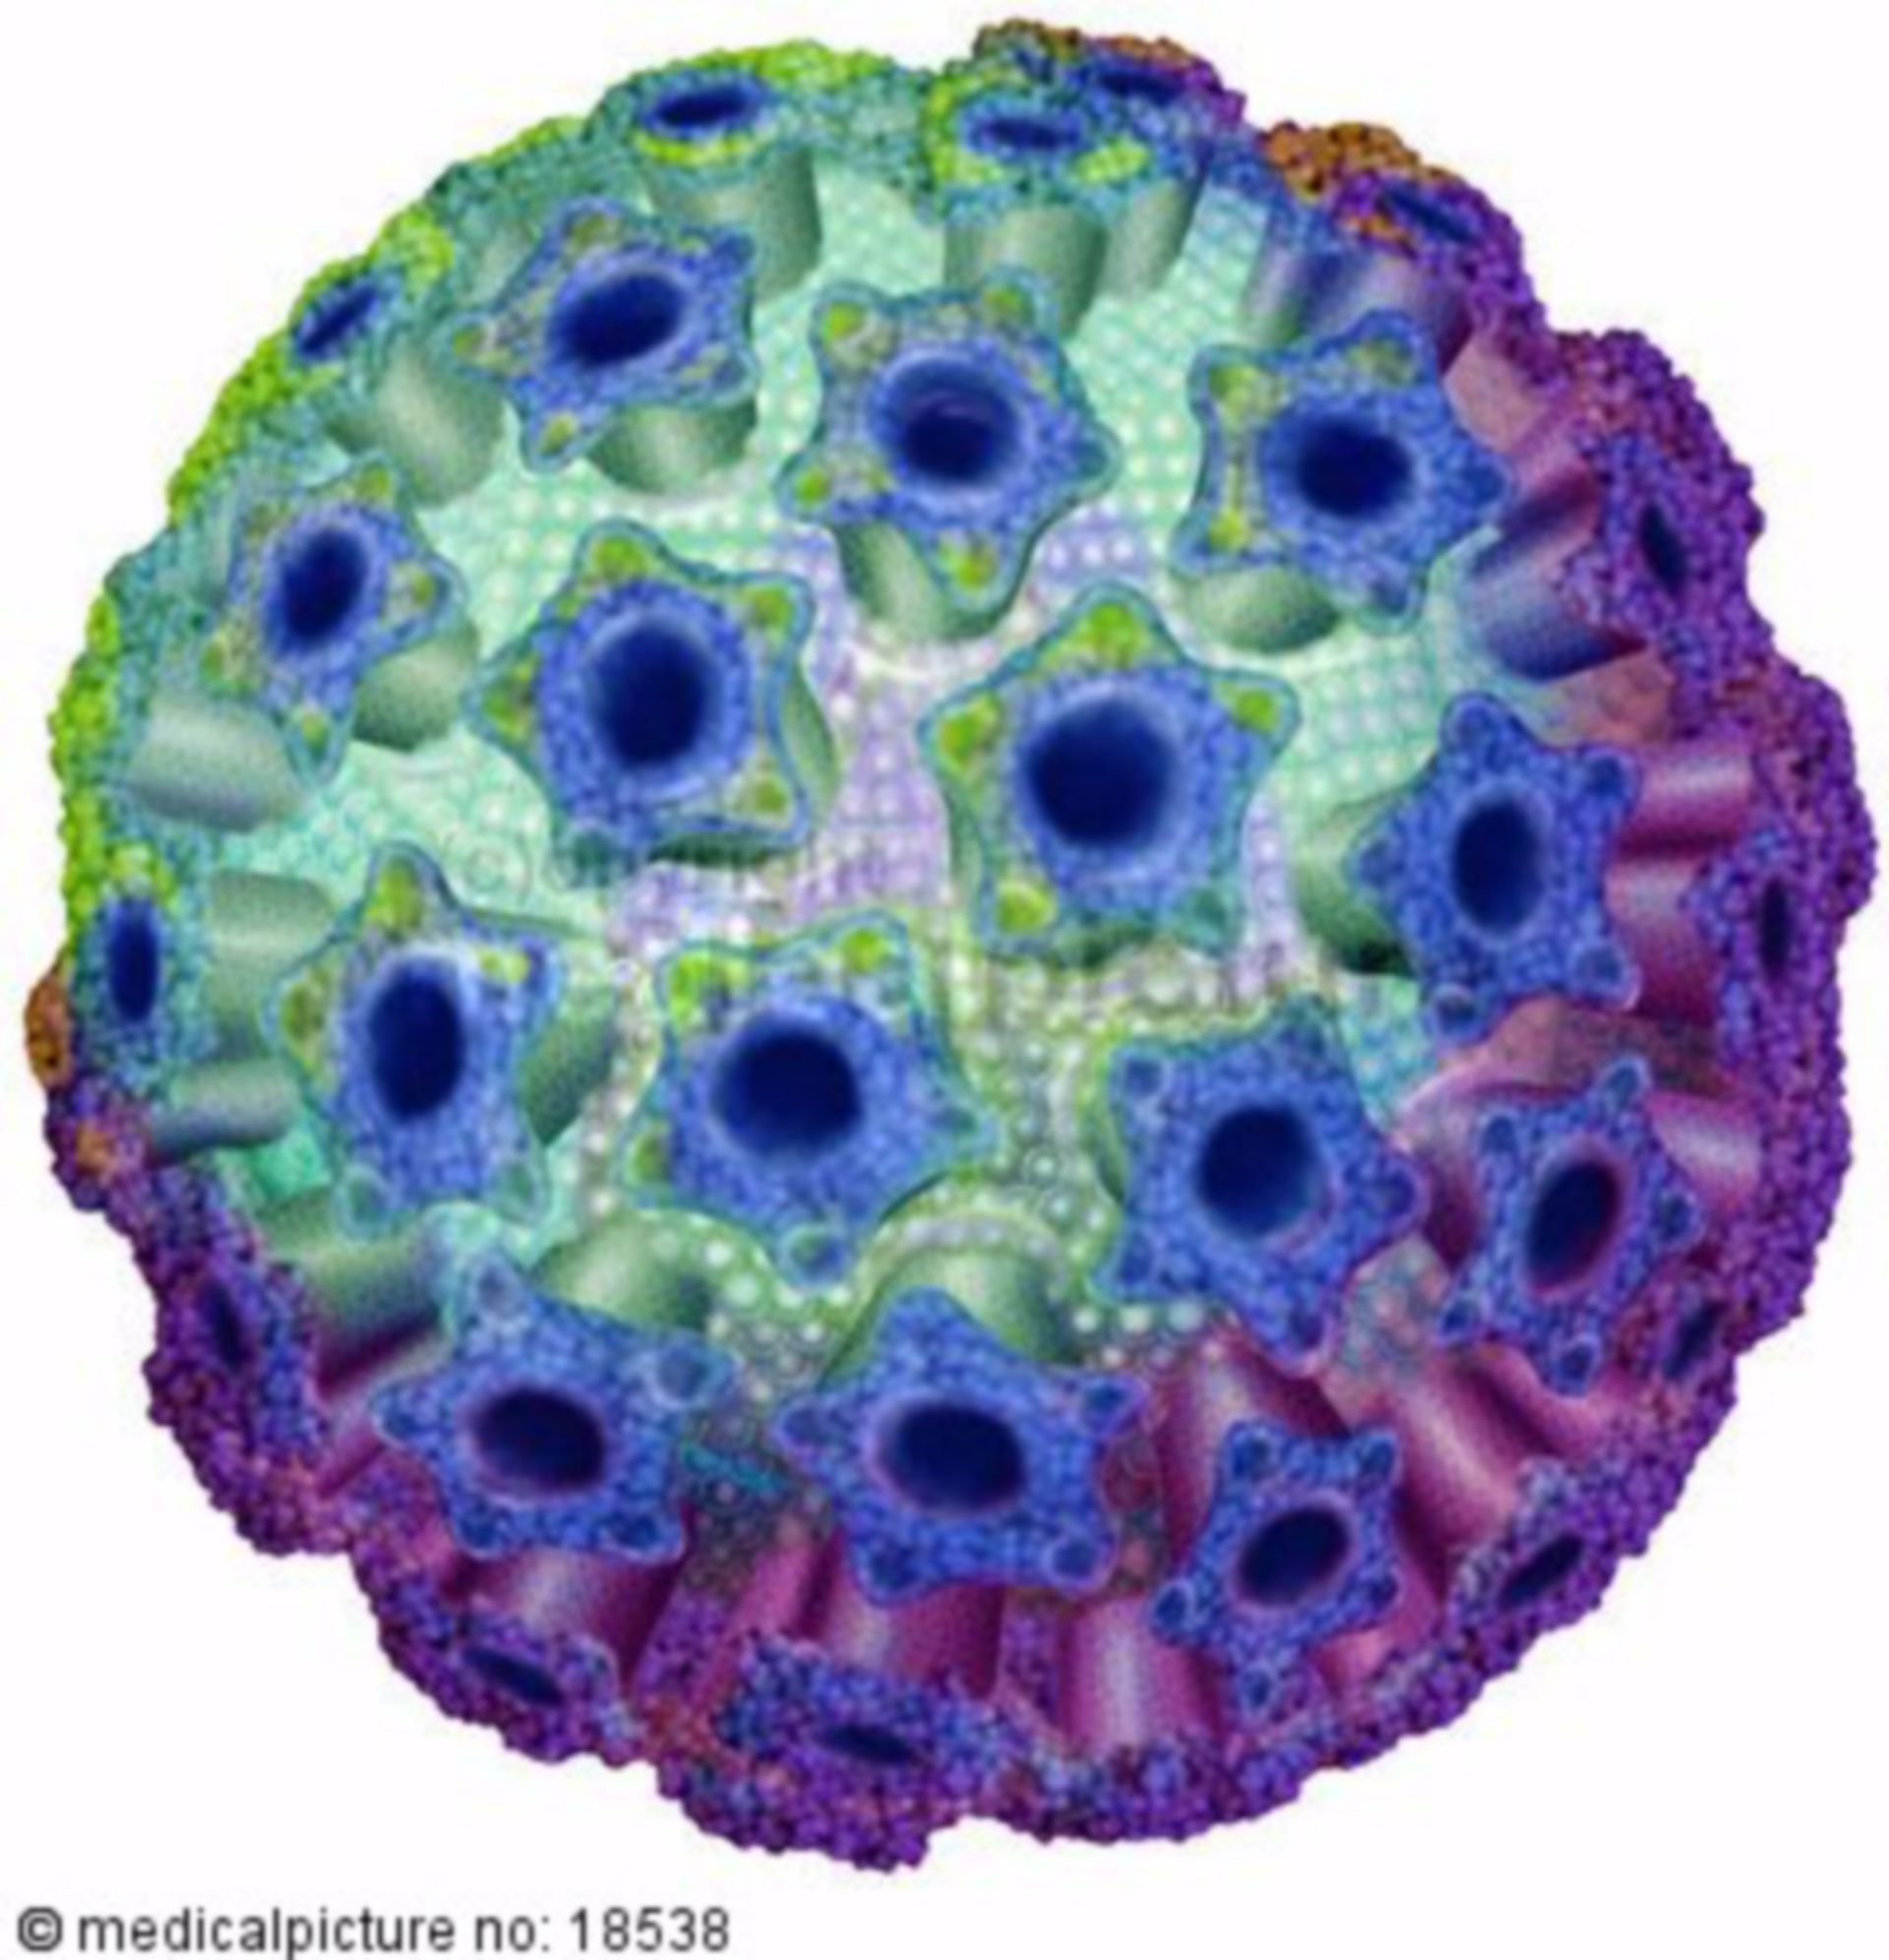 Human papilloma virus, HPV